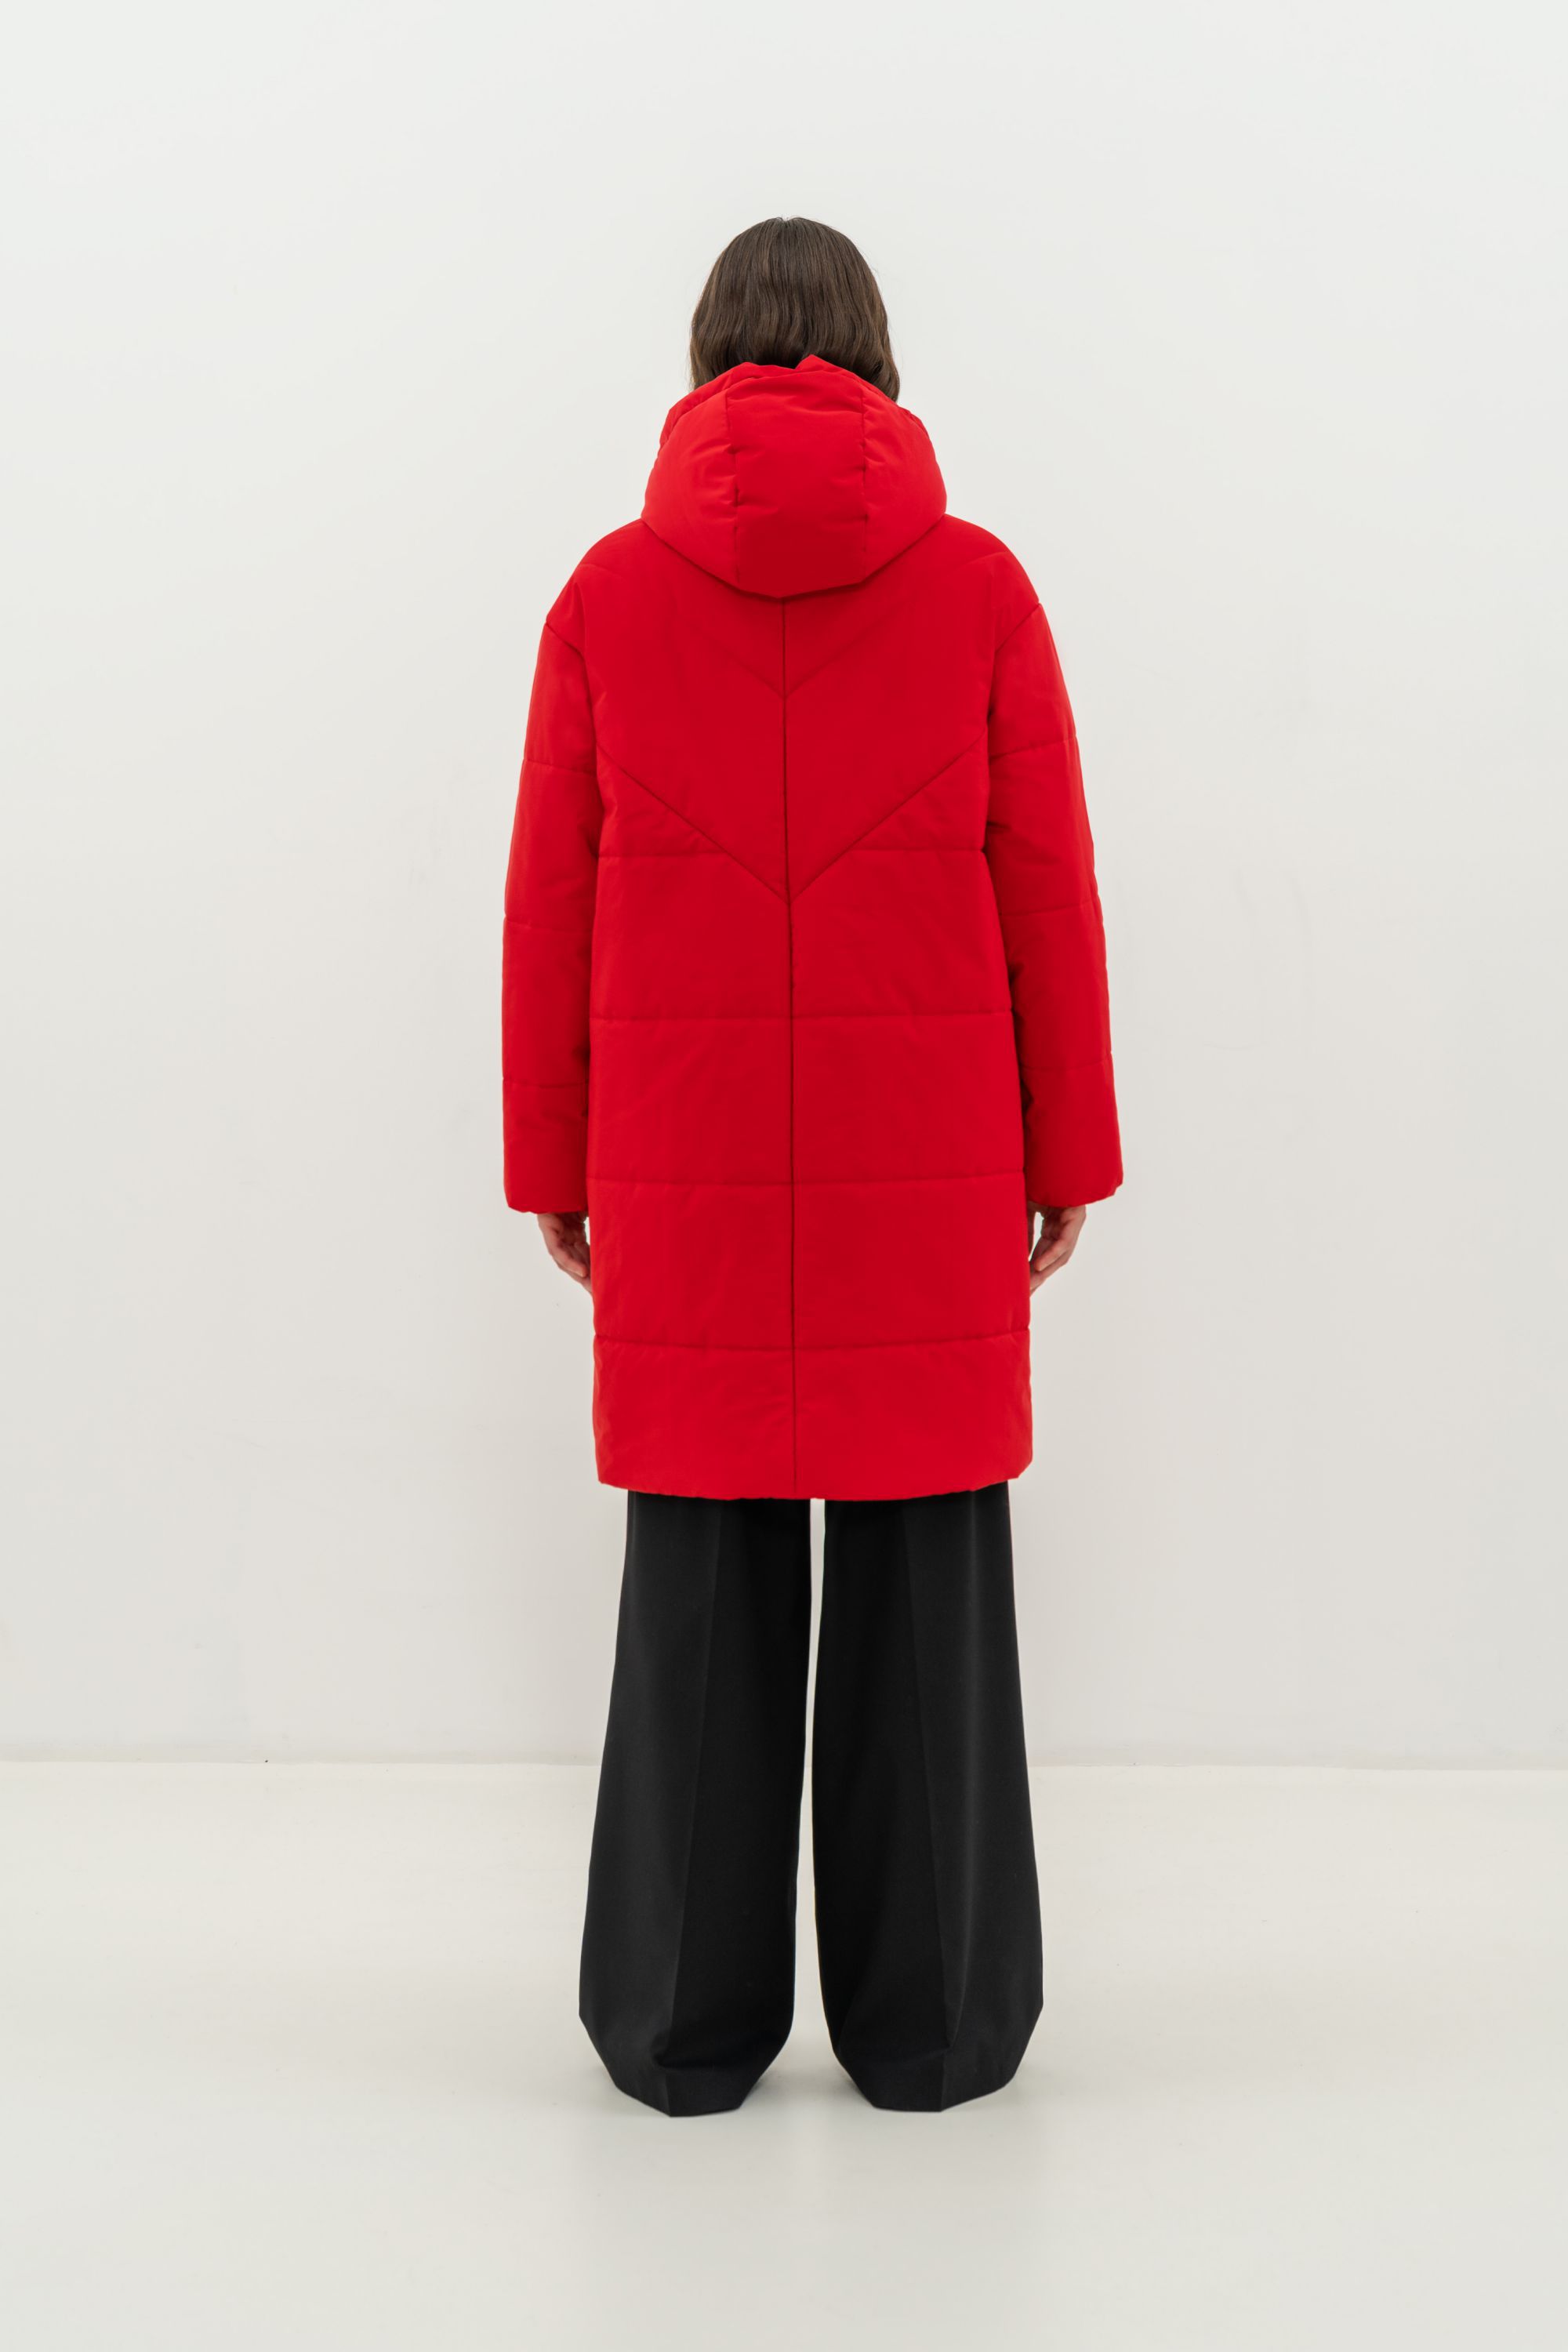 Пальто женское плащевое утепленное 5-12381-1. Фото 4.